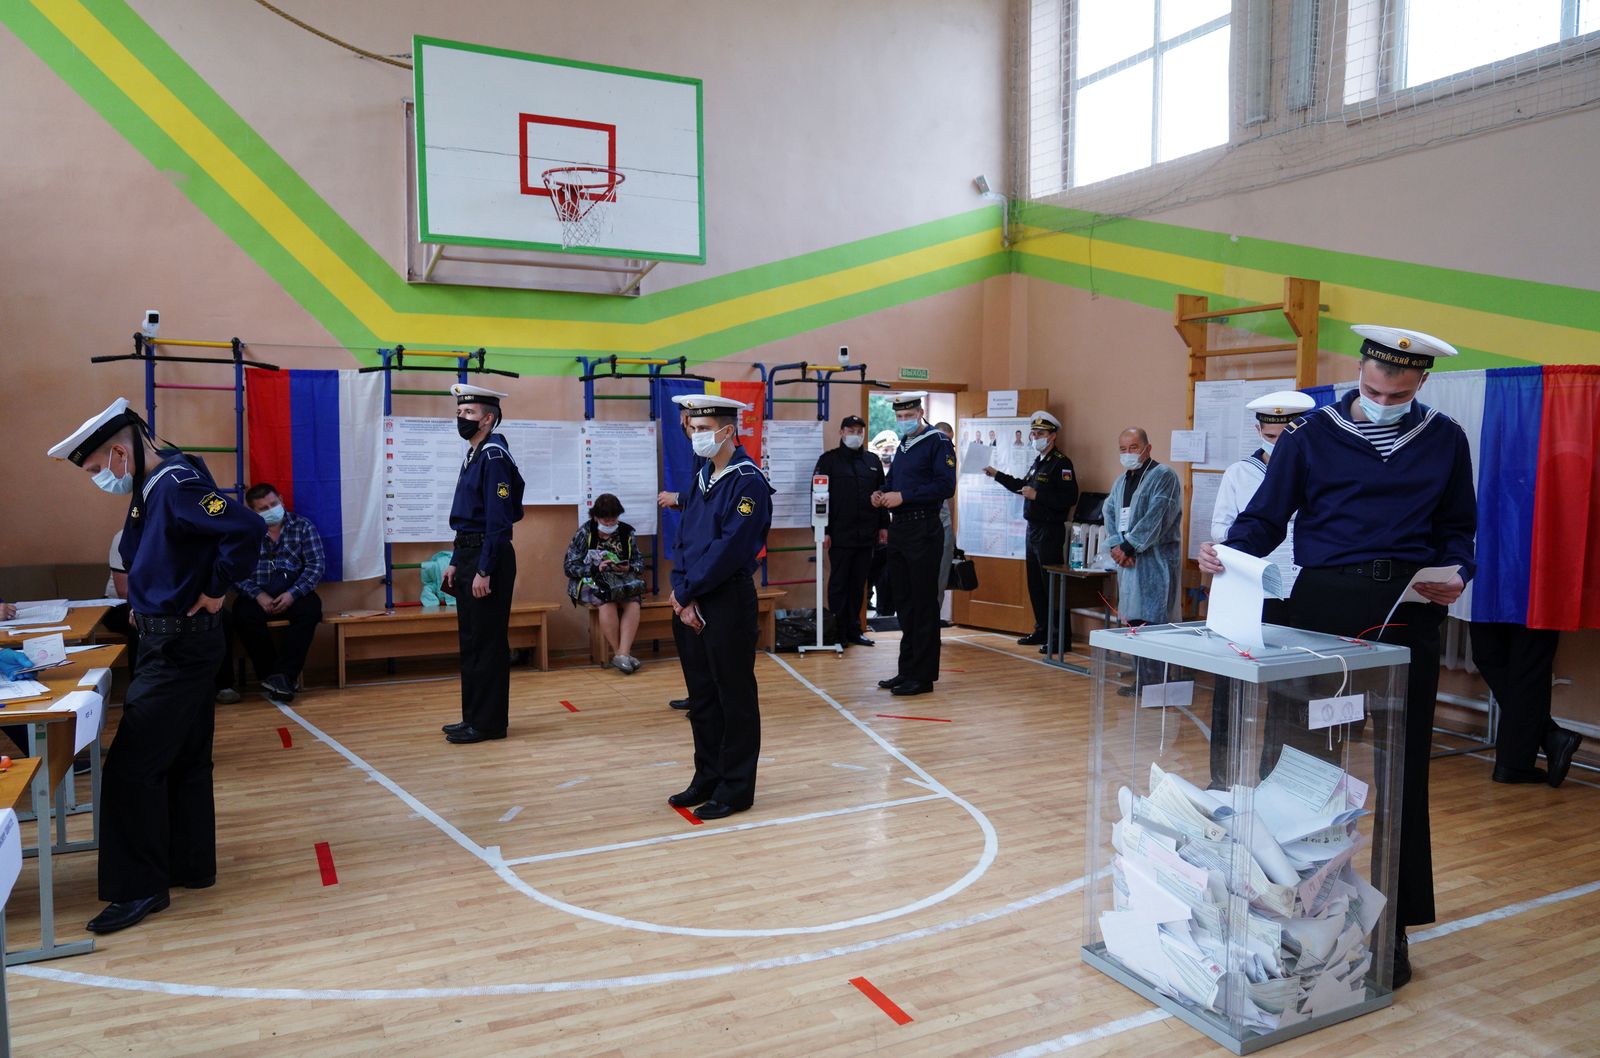 الانتخابات البرلمانية الروسية في منطقة بالتييسك - 17 سبتمبر - REUTERS